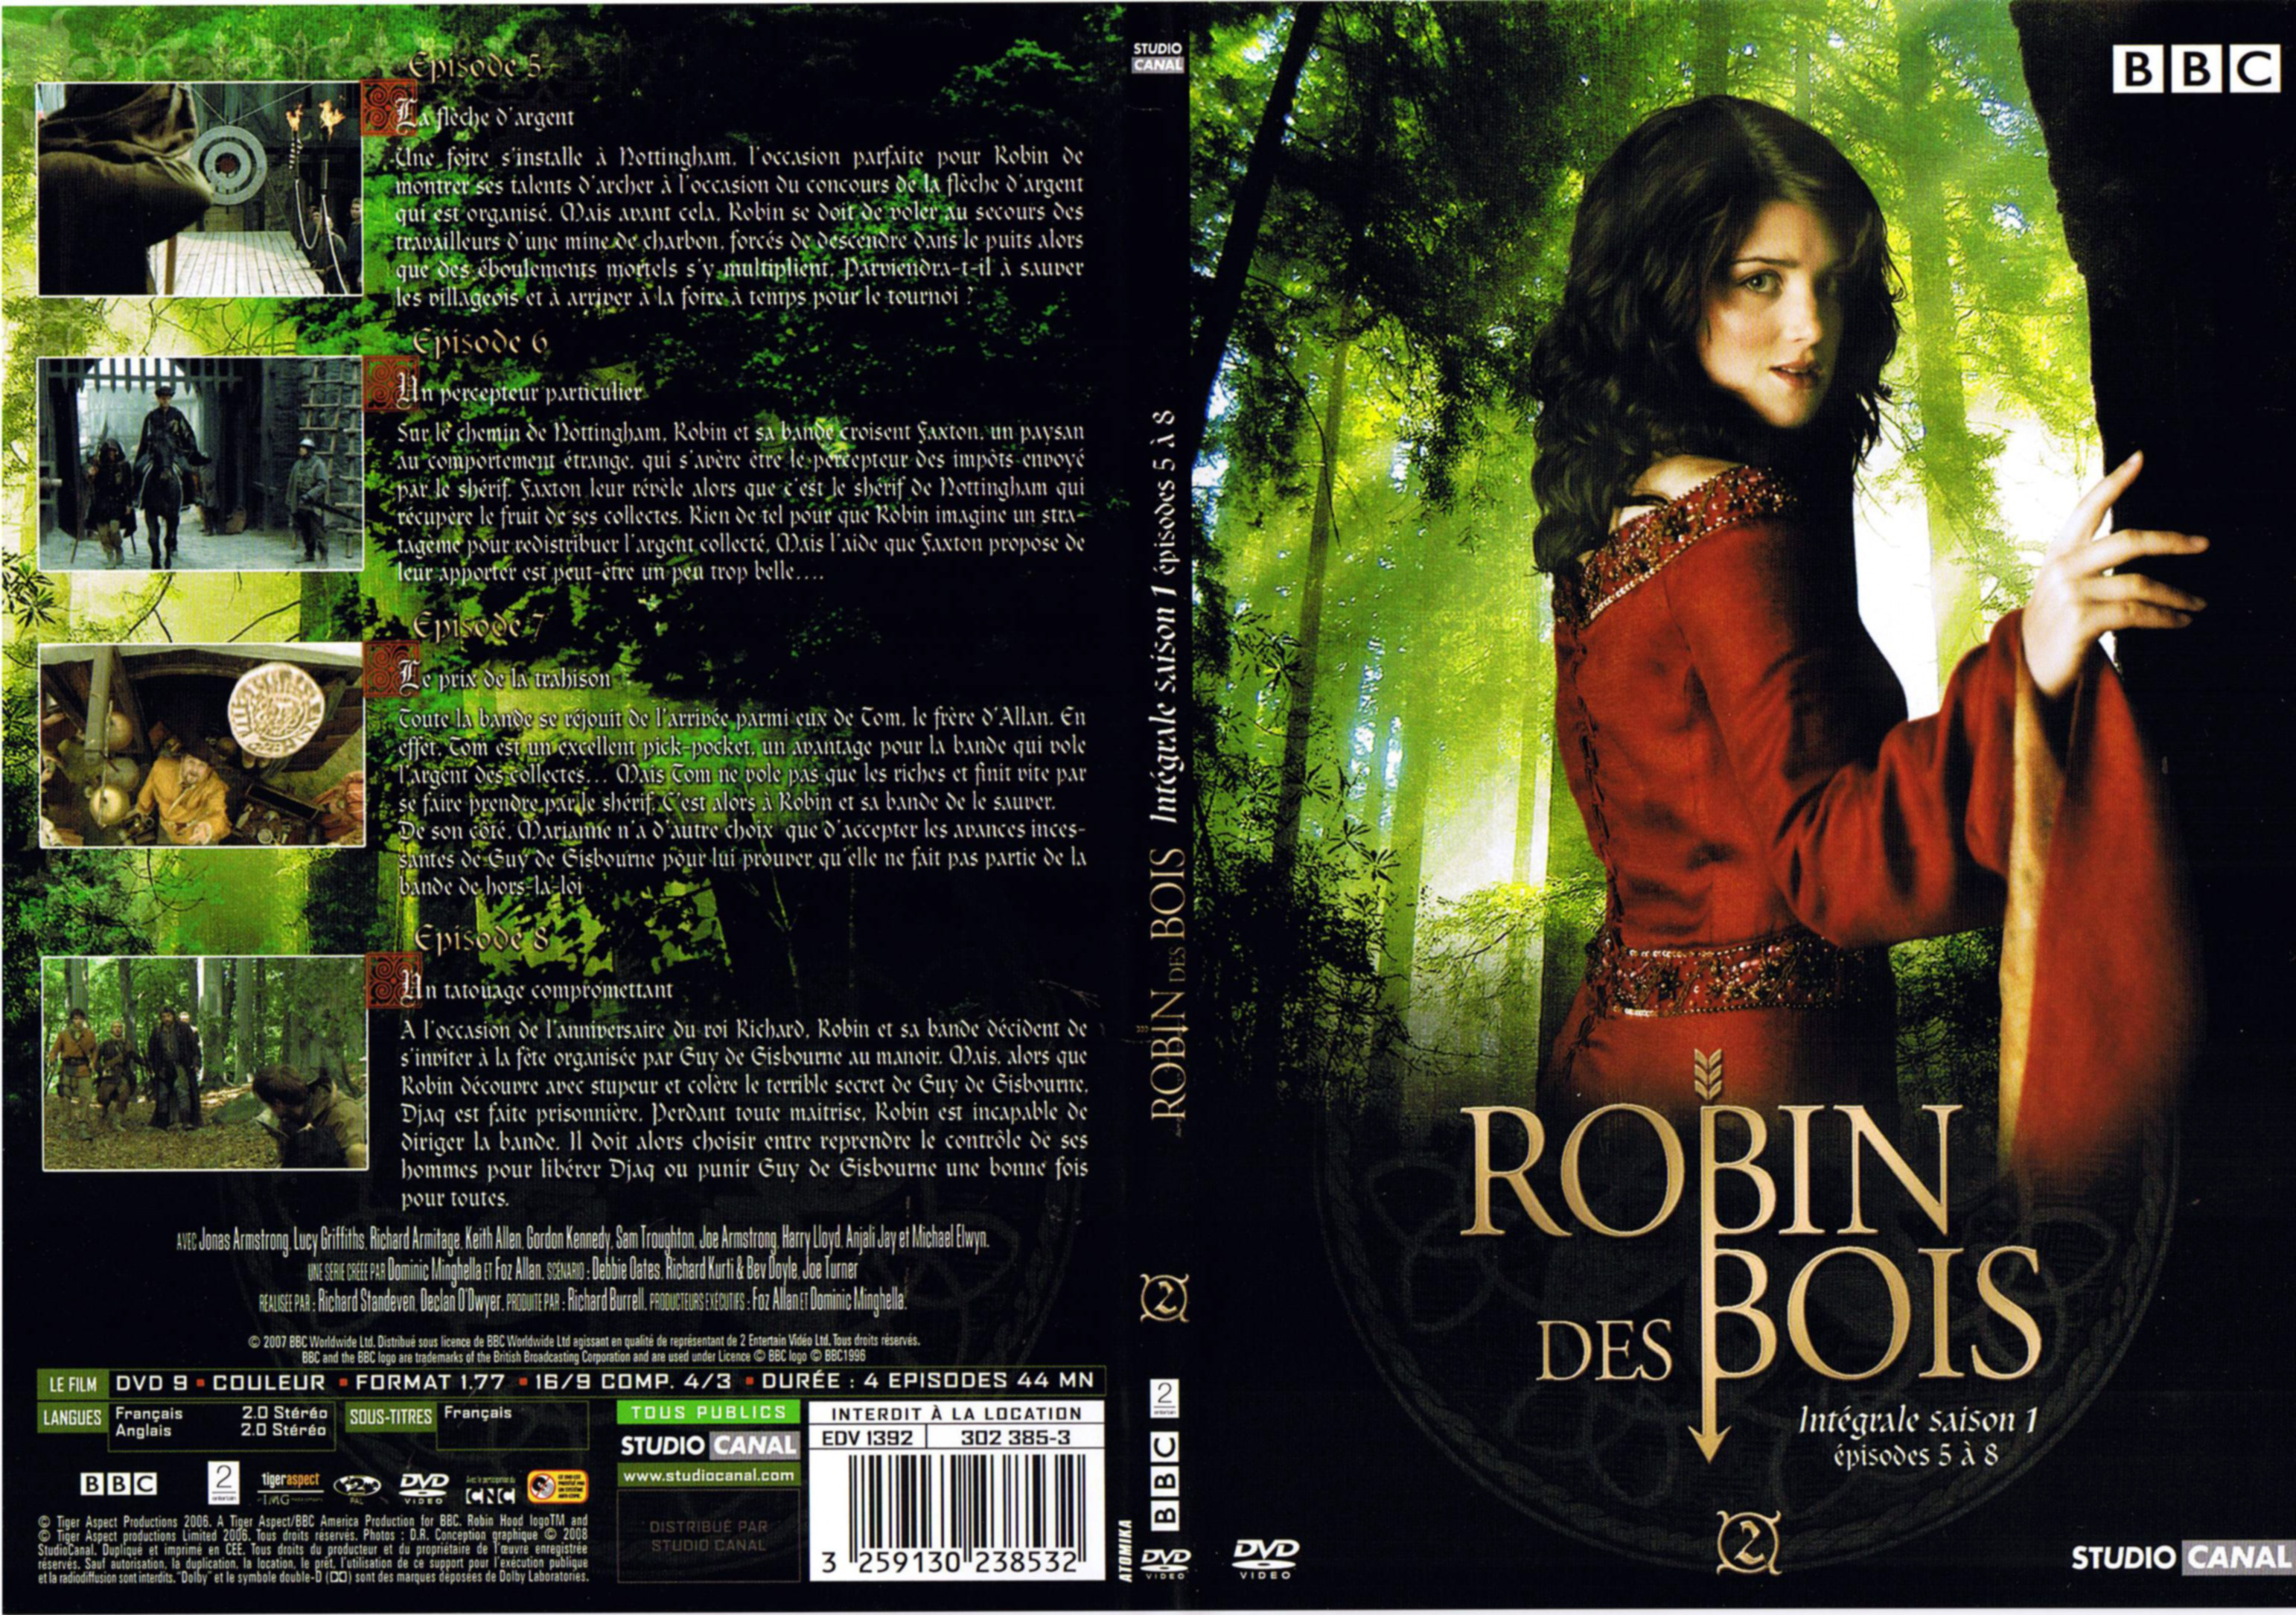 Jaquette DVD Robin des bois Saison 1 DVD 2